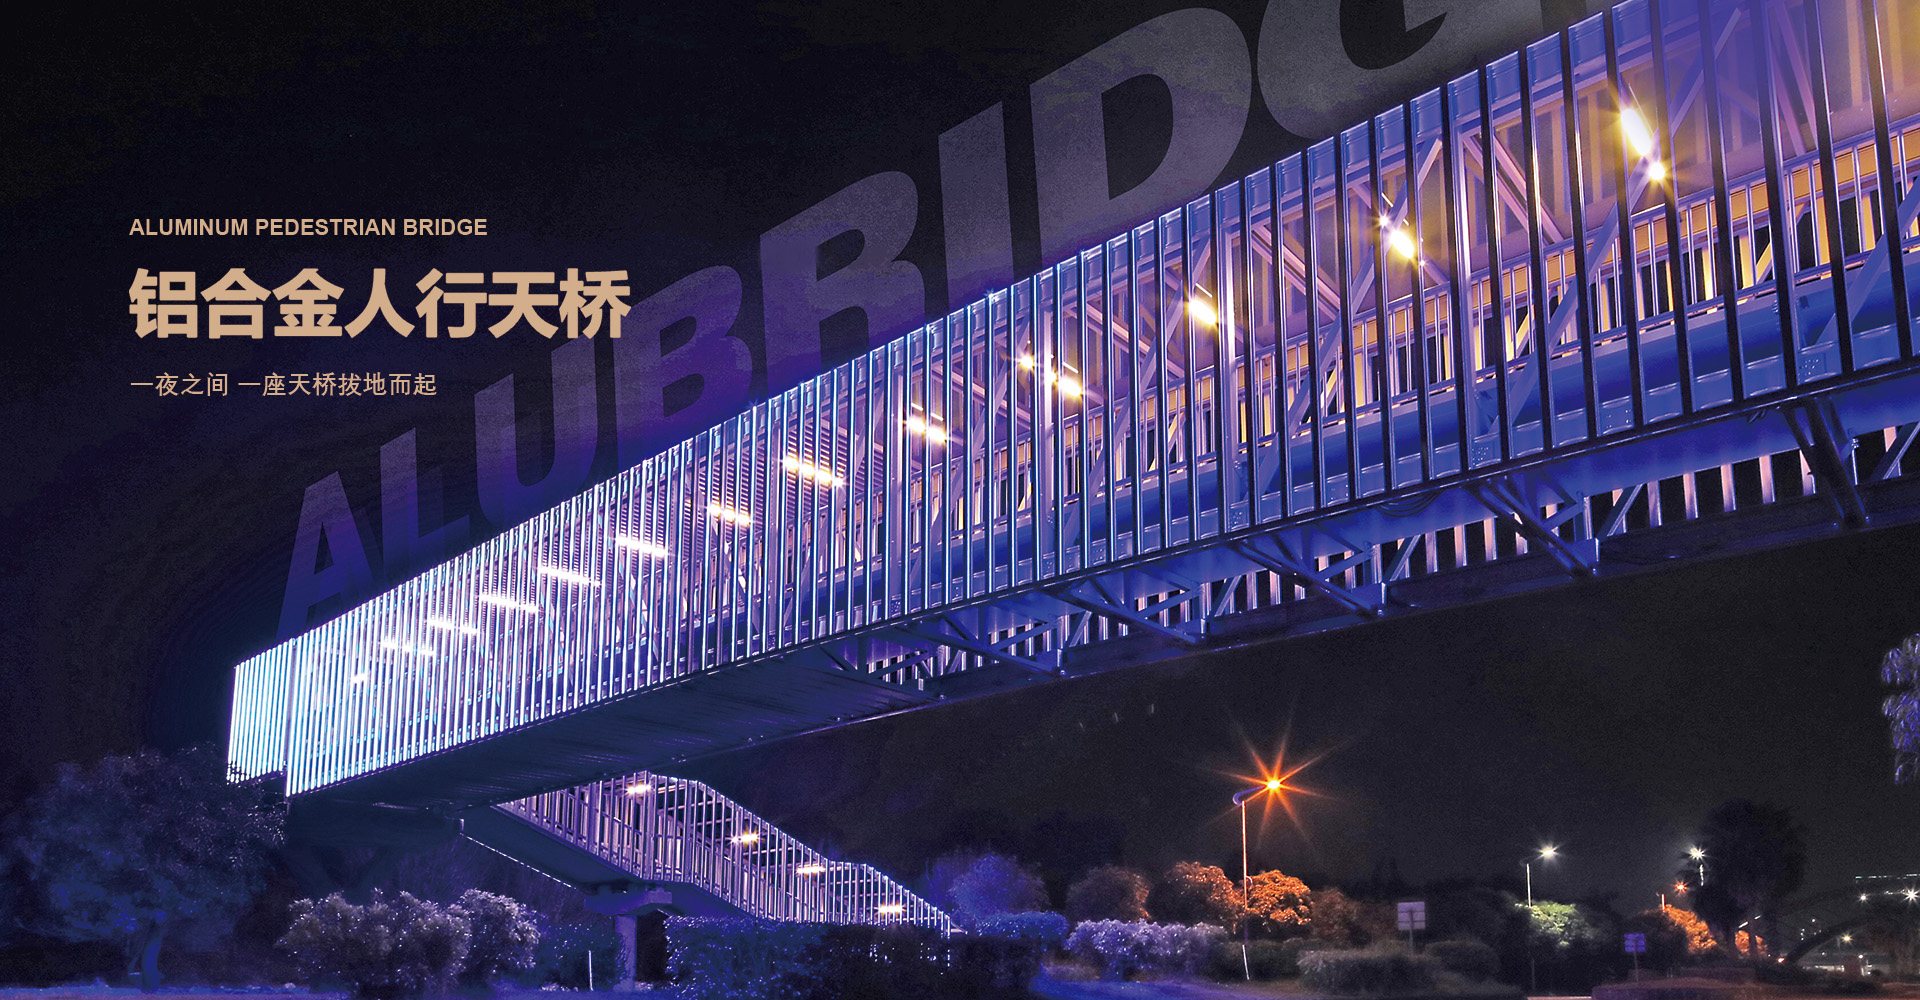 K8体育官方网站(中国)有限公司丨组装合成式铝合金建筑成套加工装备